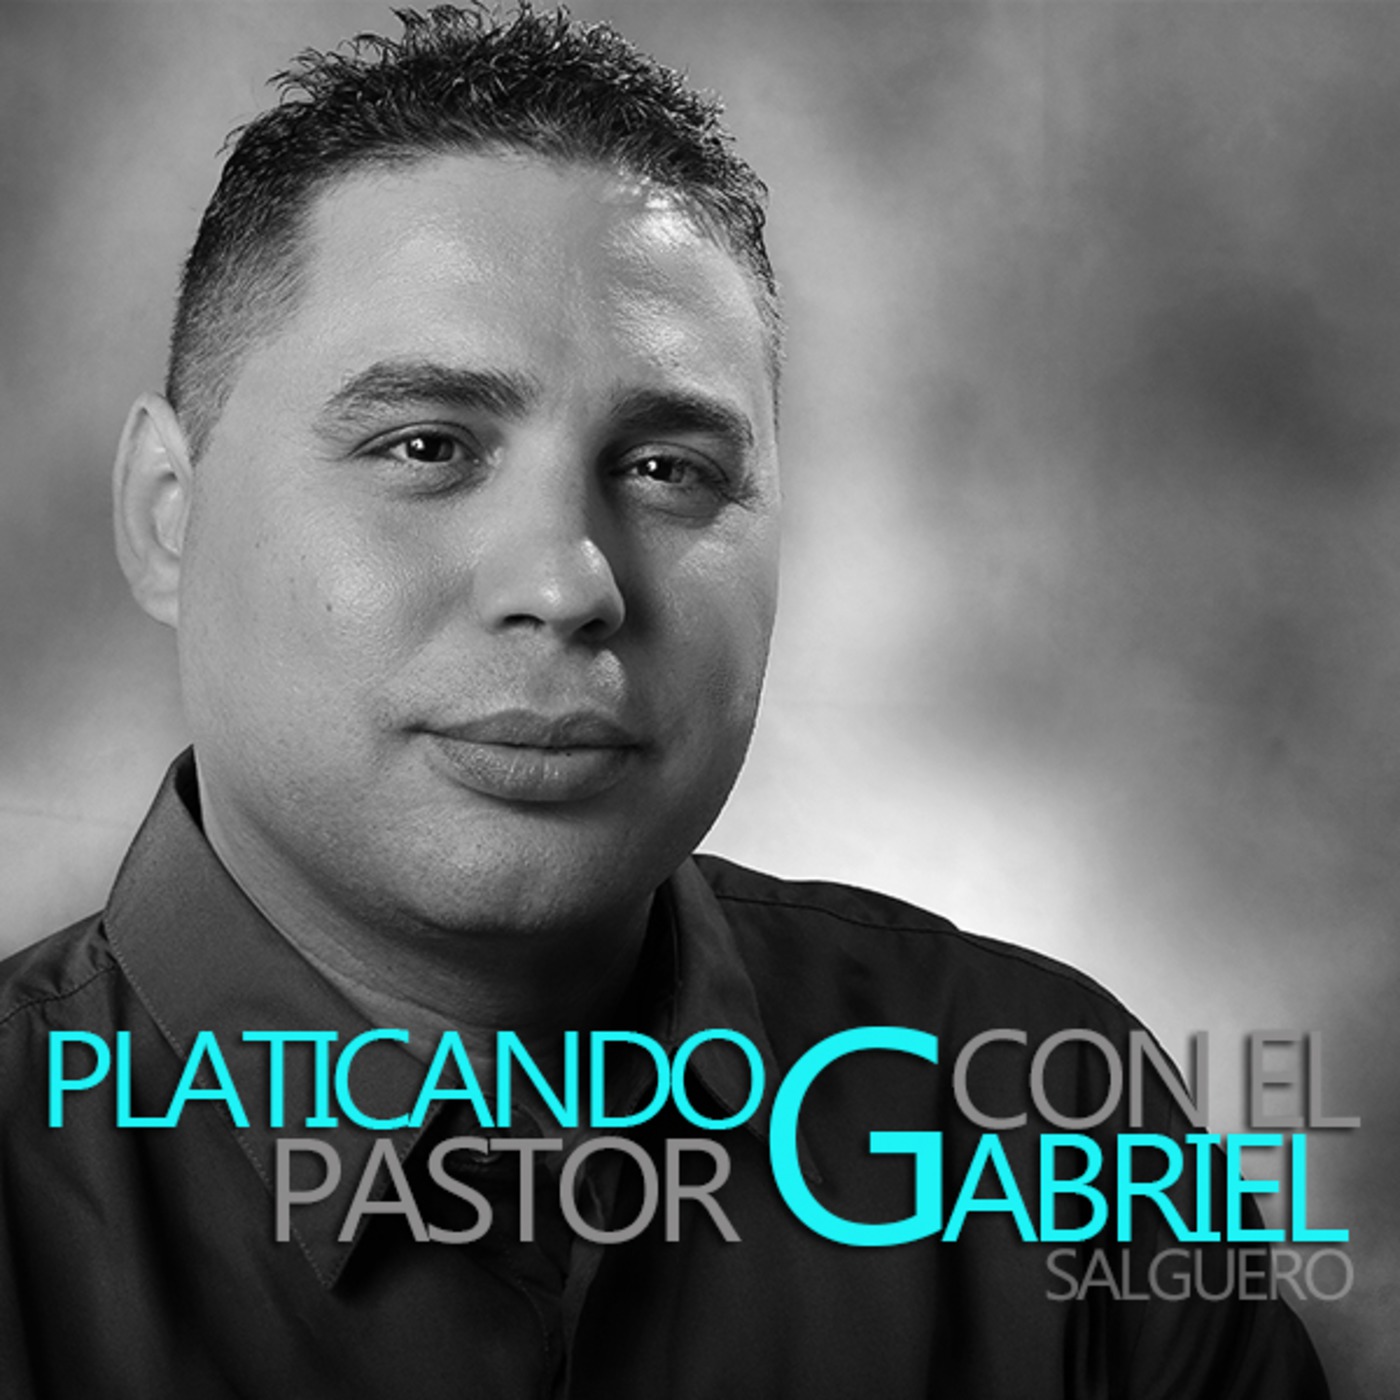 Empatía-Platicando con el Pastor Gabriel Salguero-017S